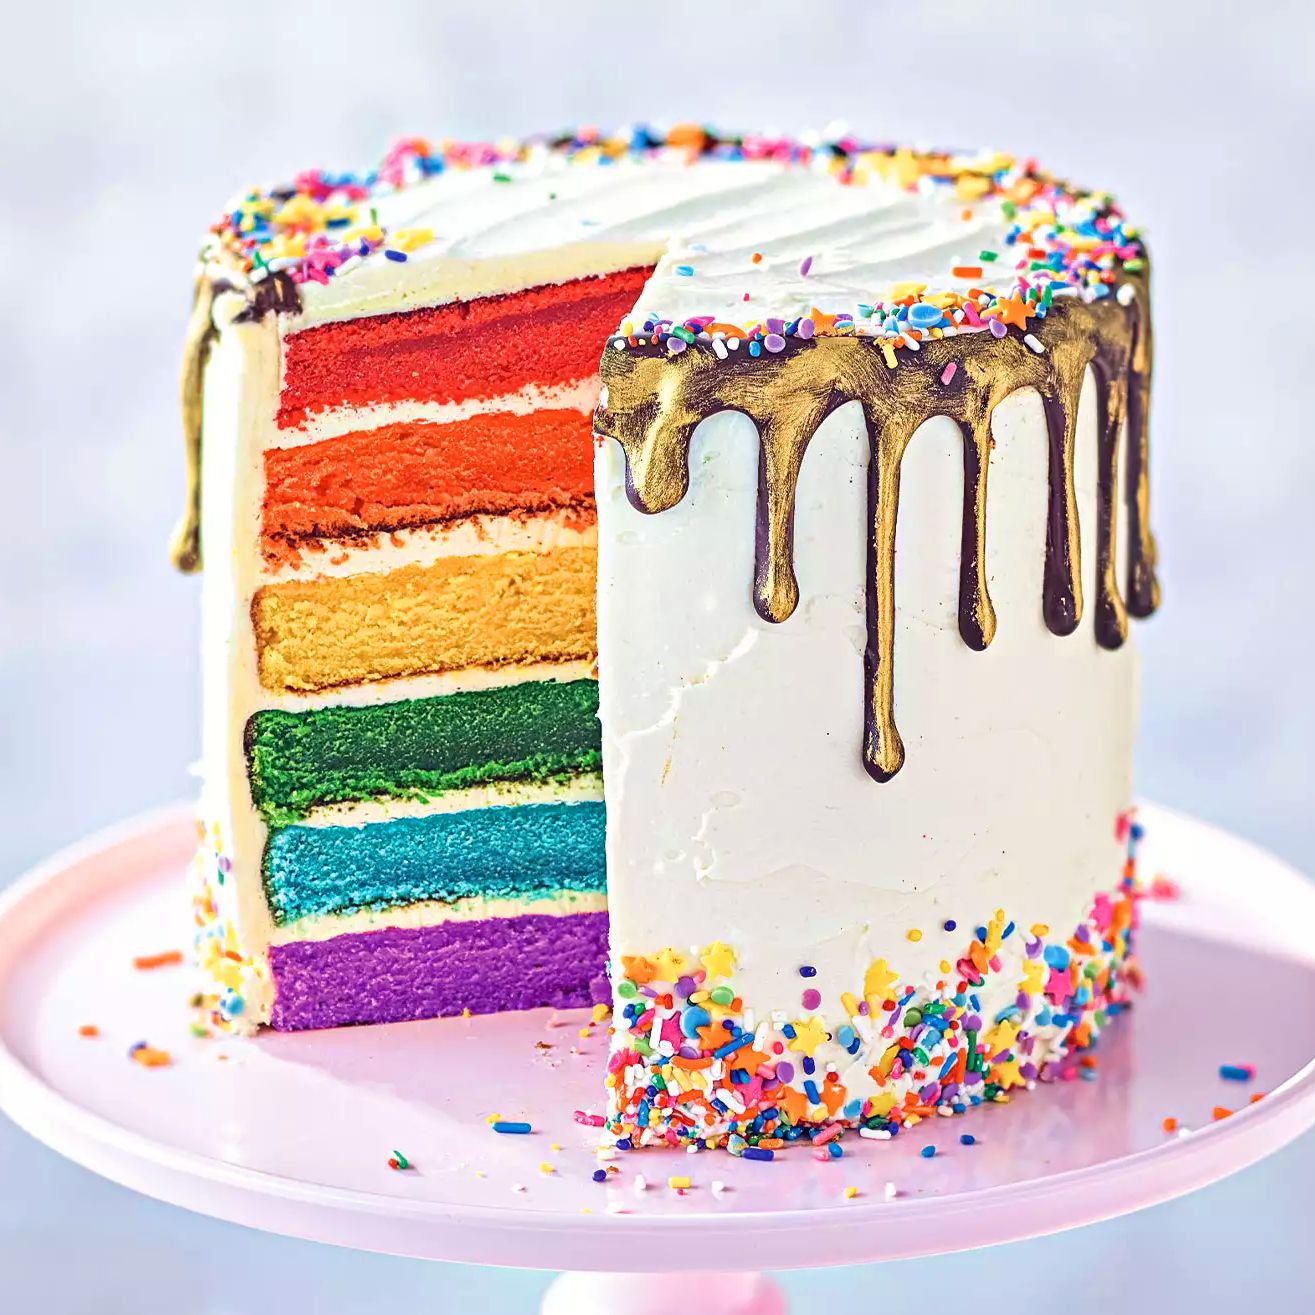 Image of the Waitrose Rainbow Layered Cake